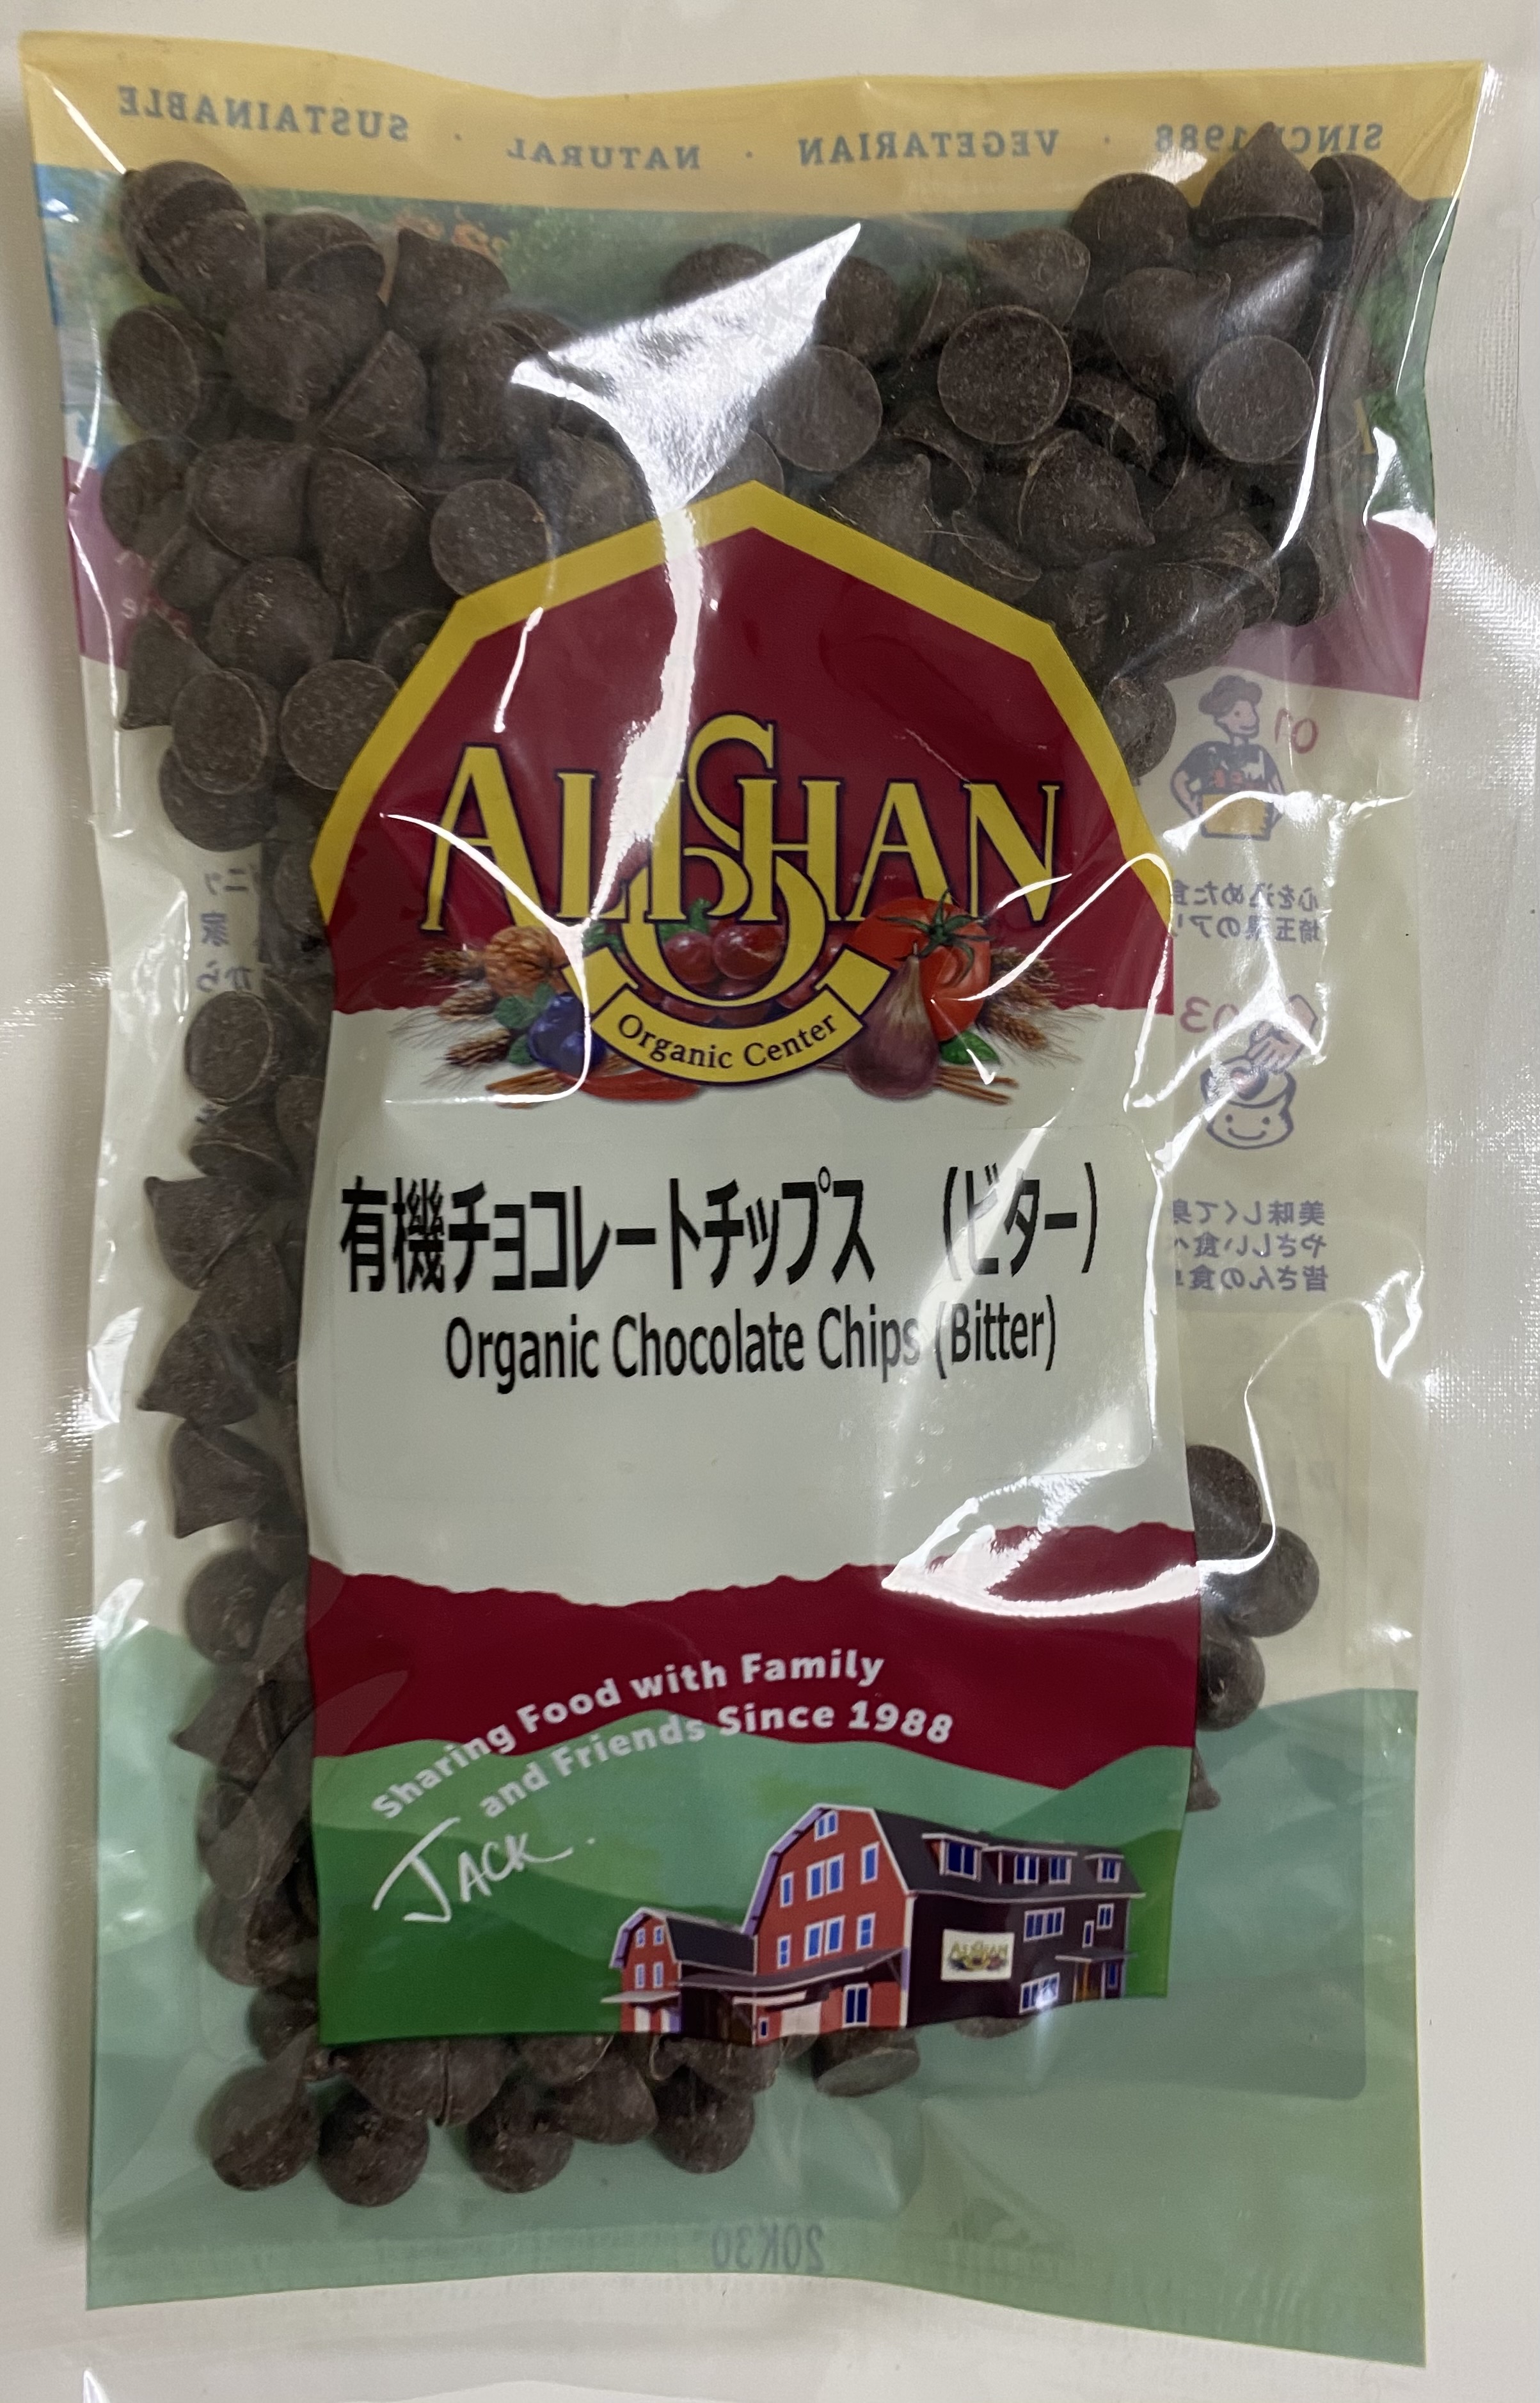 Alishan Organic Chocolate Chips (Bitter)